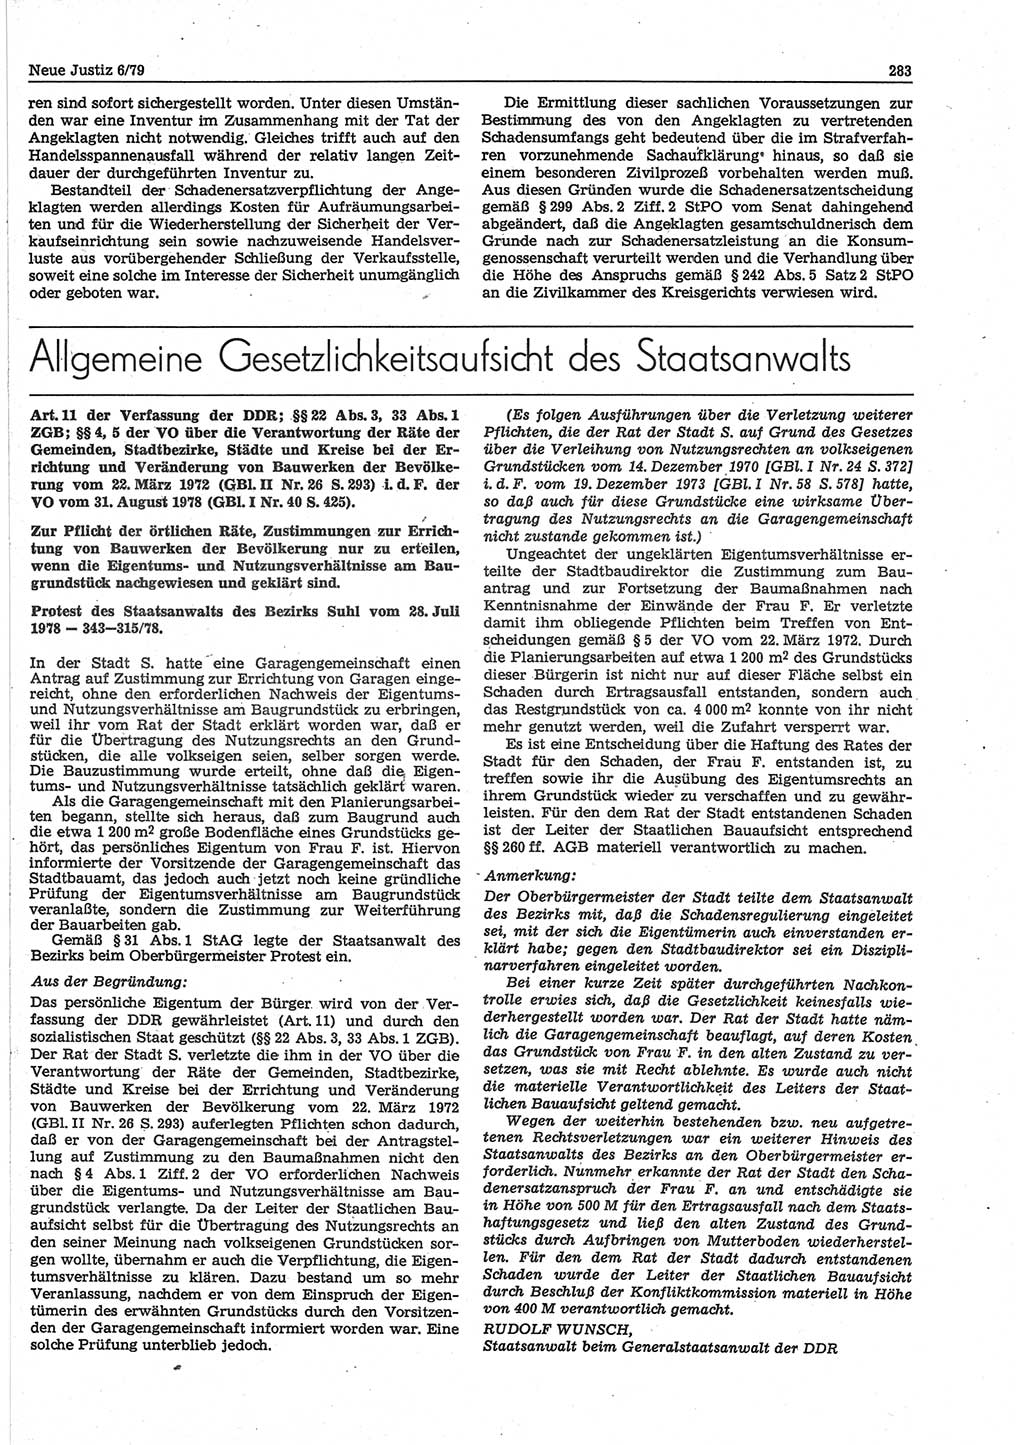 Neue Justiz (NJ), Zeitschrift für sozialistisches Recht und Gesetzlichkeit [Deutsche Demokratische Republik (DDR)], 33. Jahrgang 1979, Seite 283 (NJ DDR 1979, S. 283)